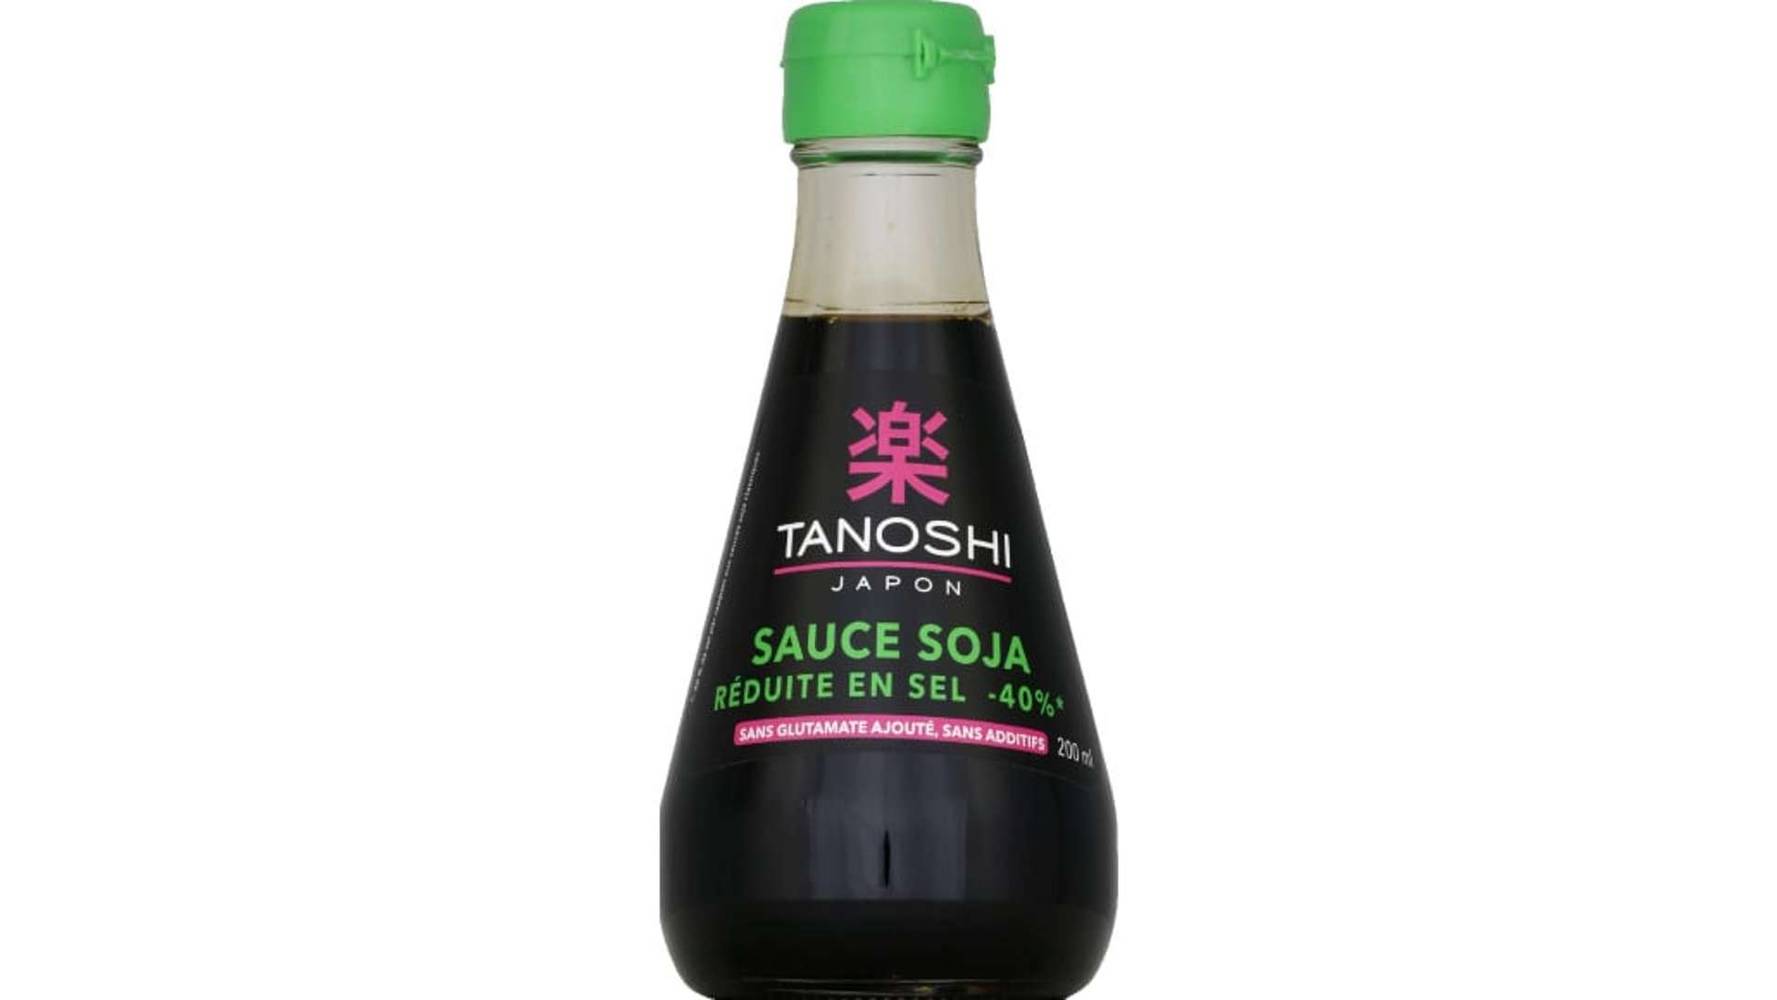 Tanoshi - Sauce soja réduite en sel